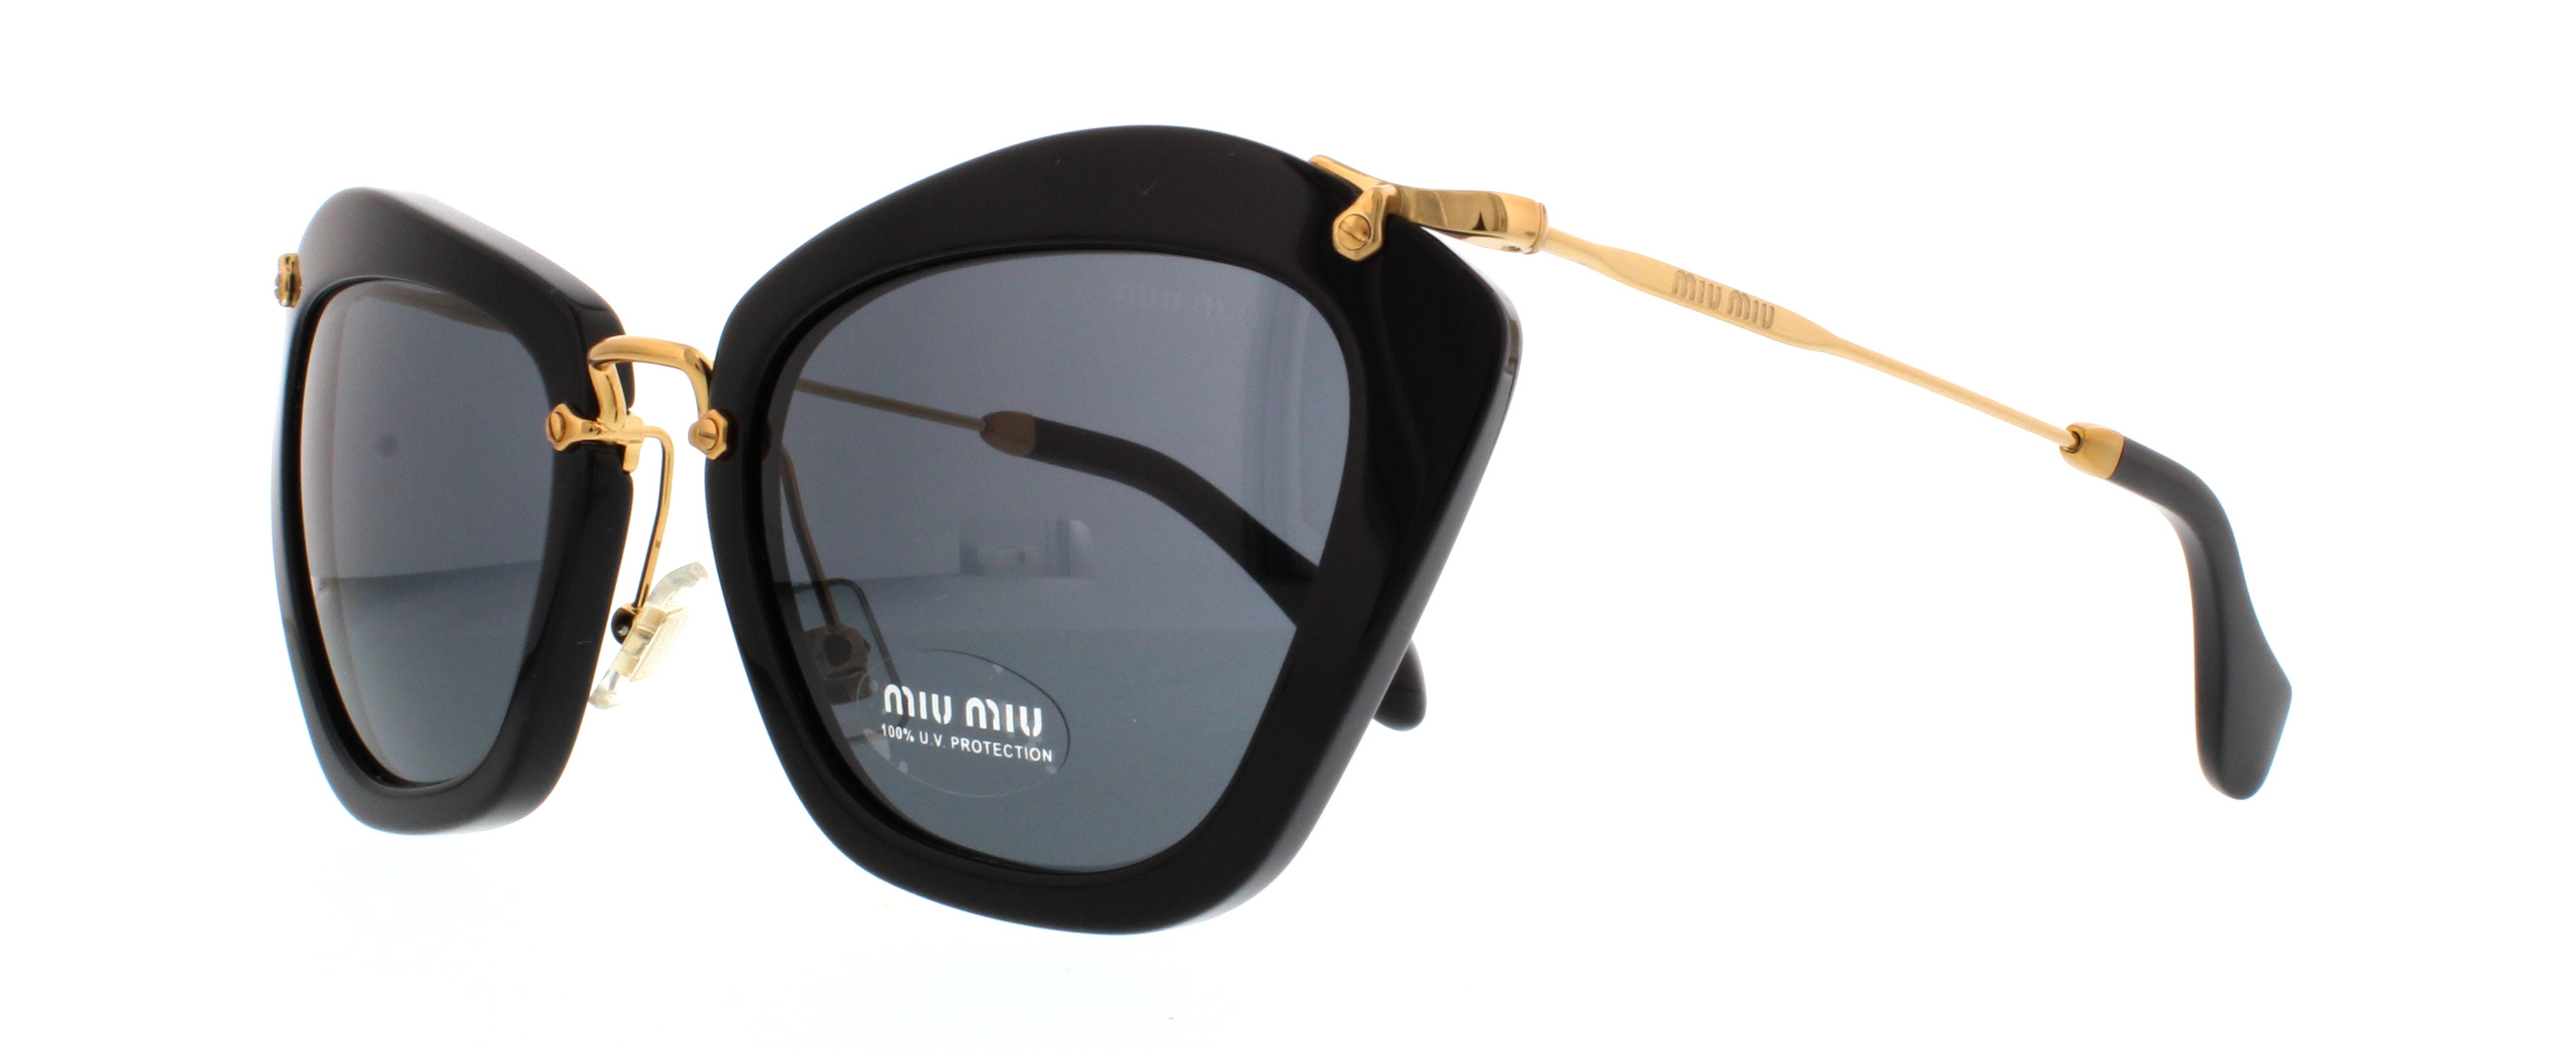 Picture of Miu Miu Sunglasses MU10NS Noir